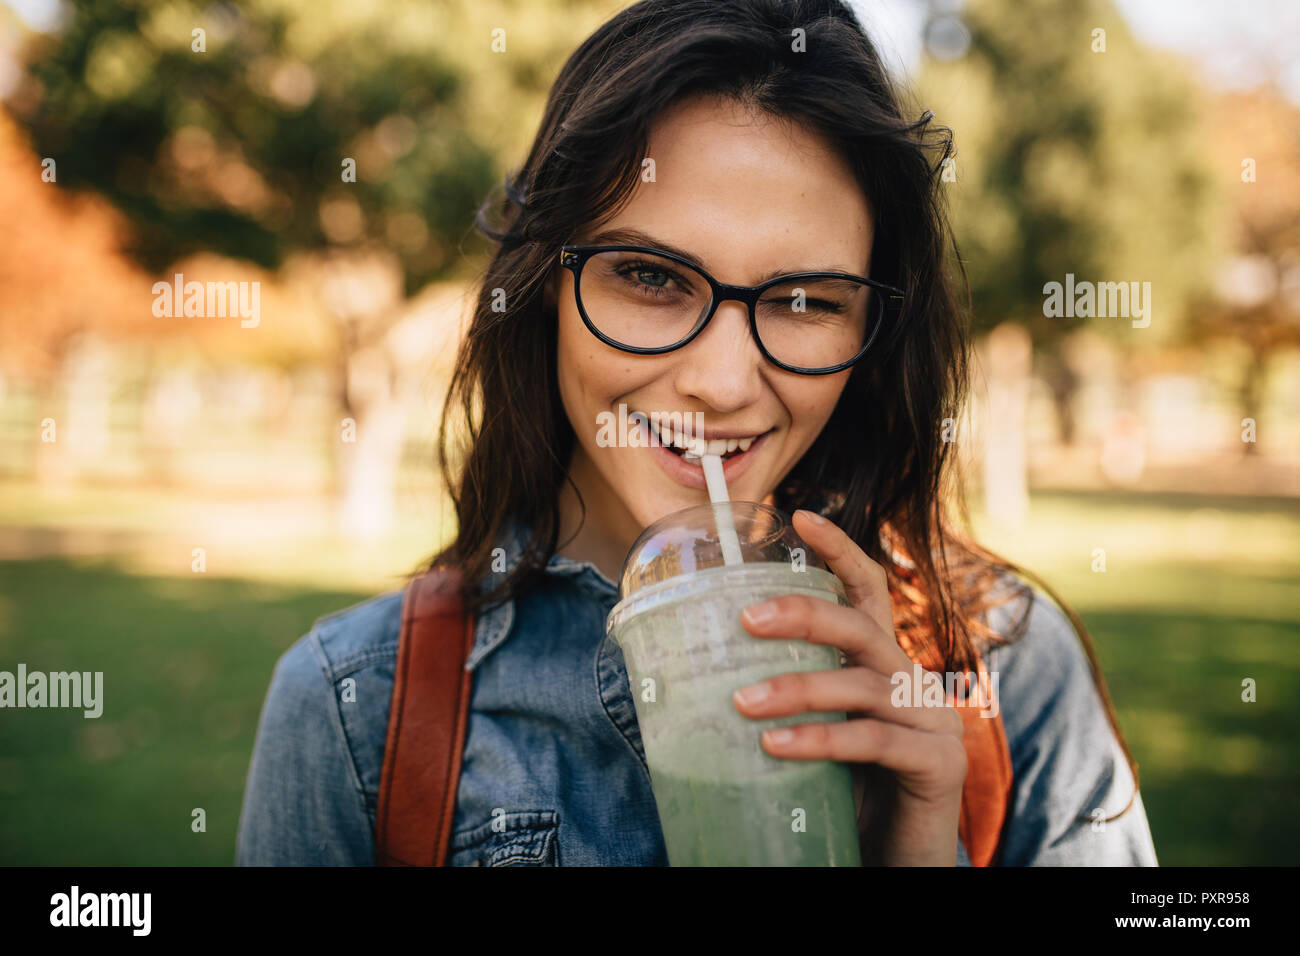 Fröhliche Frau im Park Saft trinken und mit einem Augenzwinkern. Frau in  Brillen trink Smoothie und Zwinkern im Auge Stockfotografie - Alamy